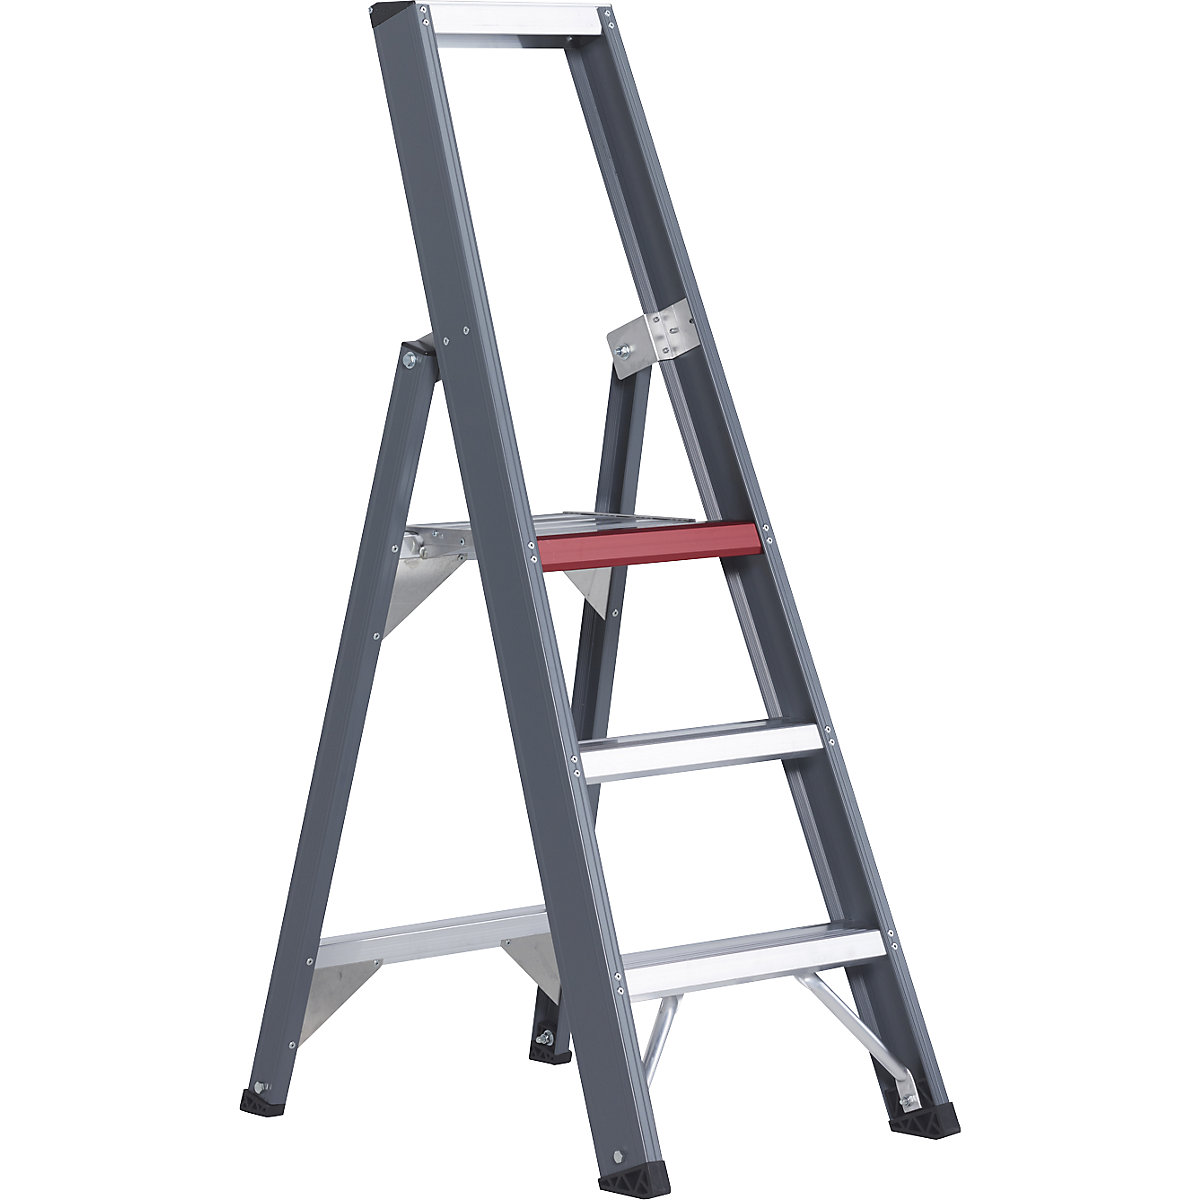 Hliníkový stojaci rebrík so stupňami, pochôdzny z jednej strany – Altrex